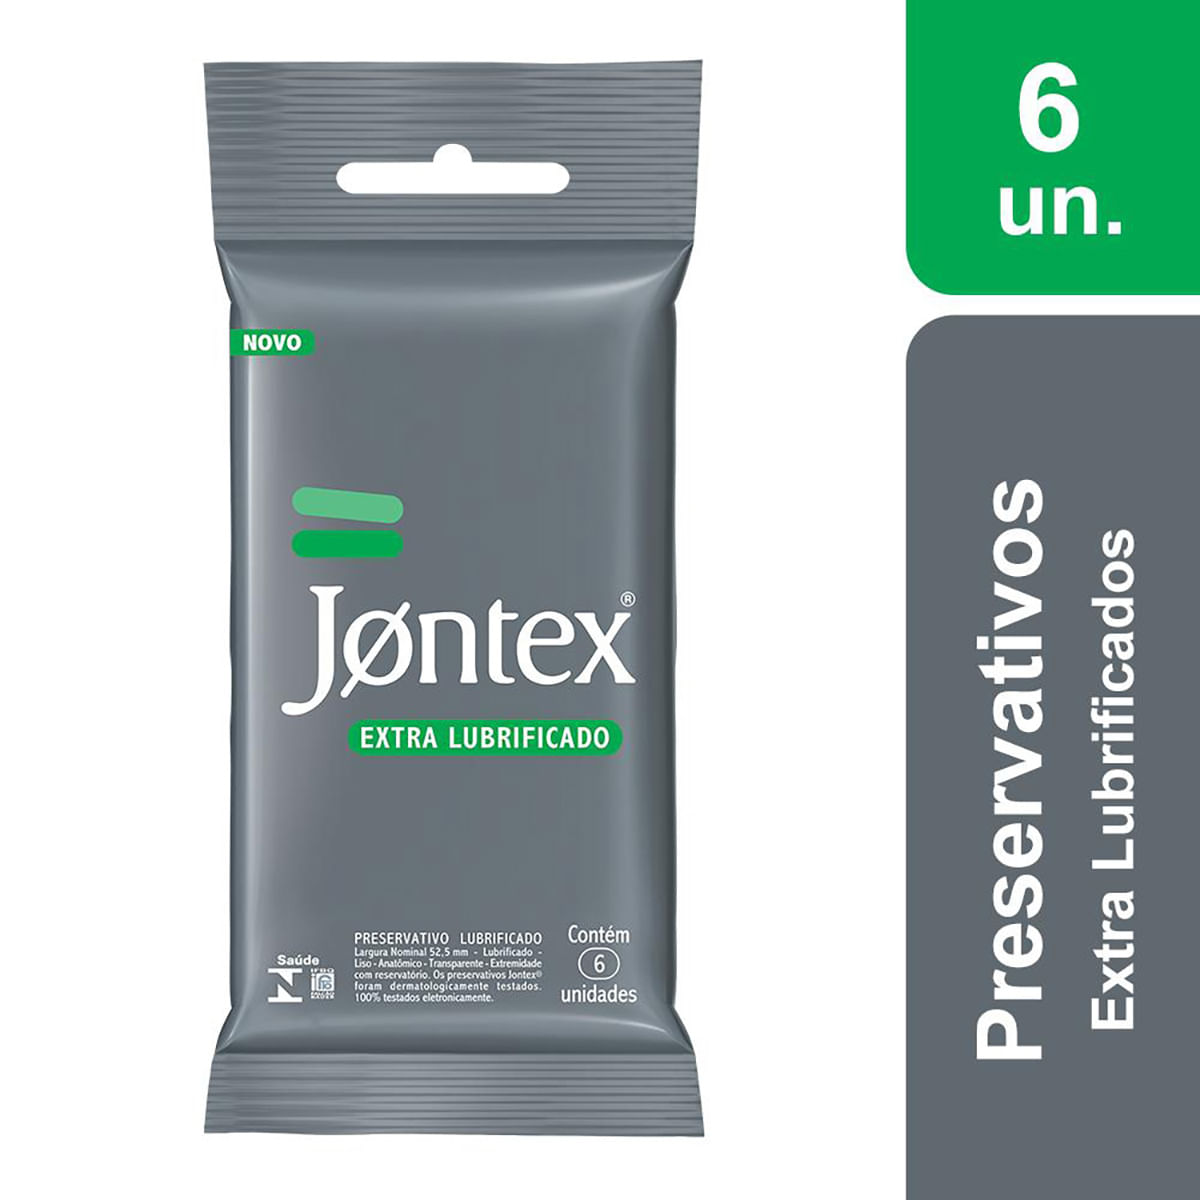 Preservativos Extra Lubrificados com 6 unidades Jontex